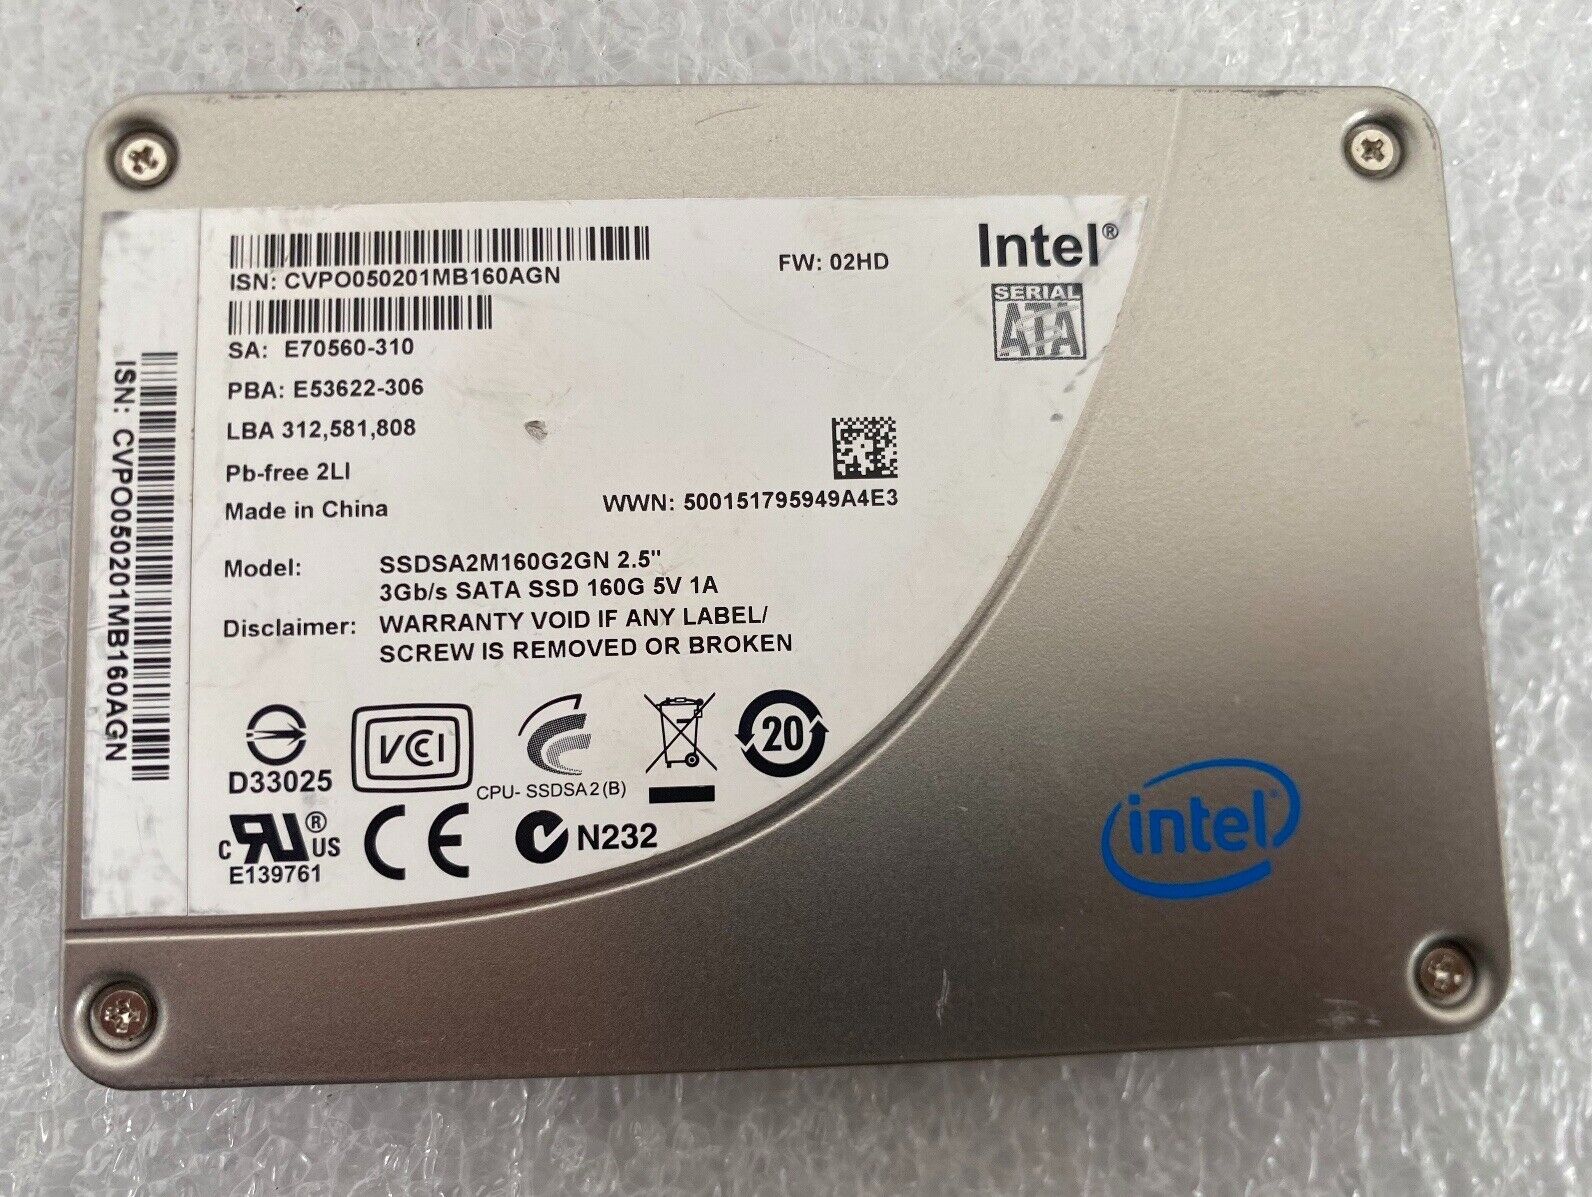 Intel 160 GB SATA 3Gb/s SSDSA2M160G2GN 2.5